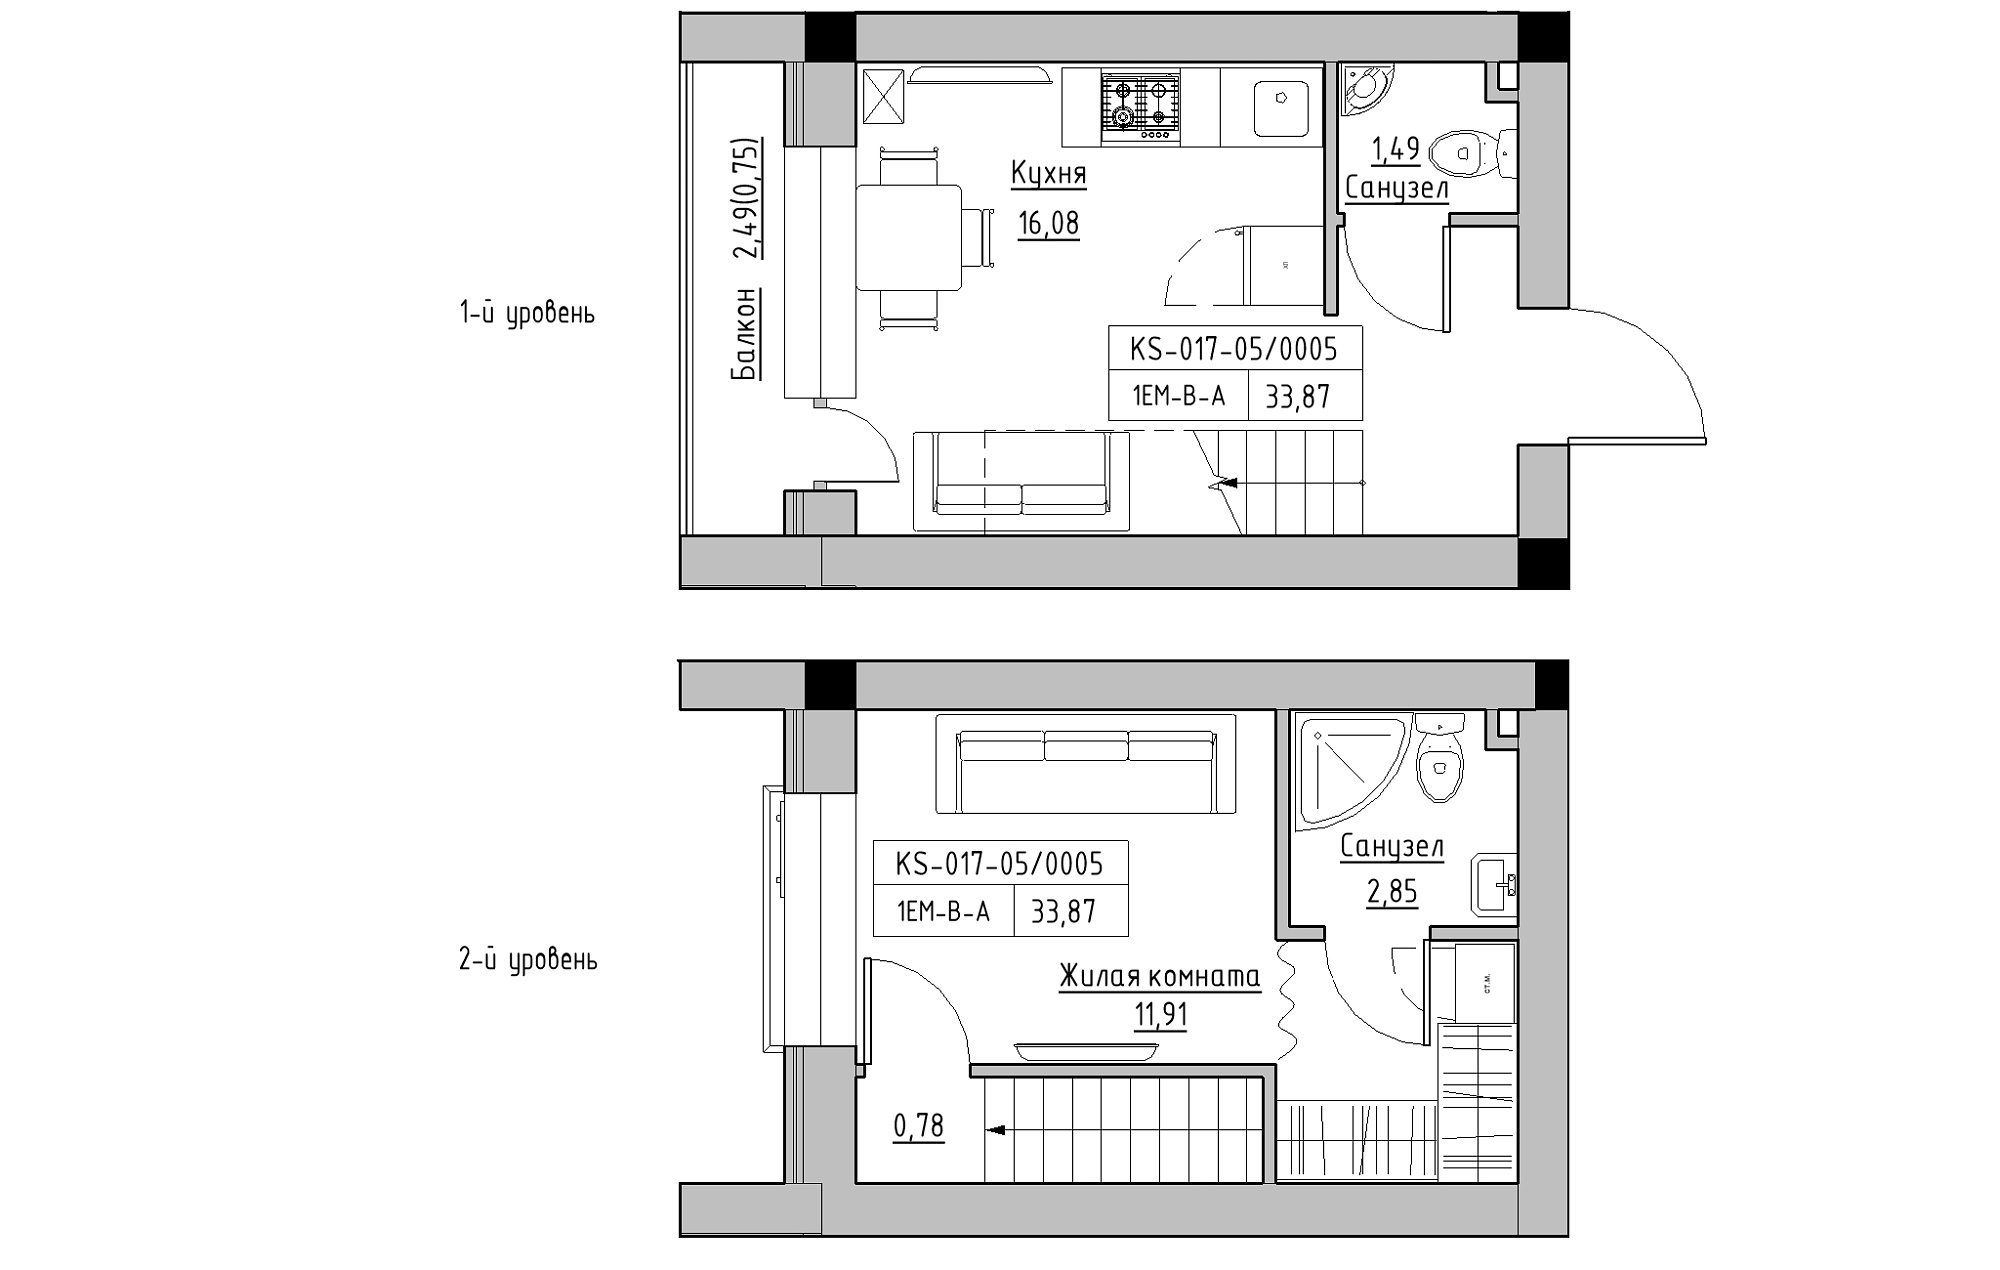 Planning 2-lvl flats area 33.87m2, KS-017-05/0005.